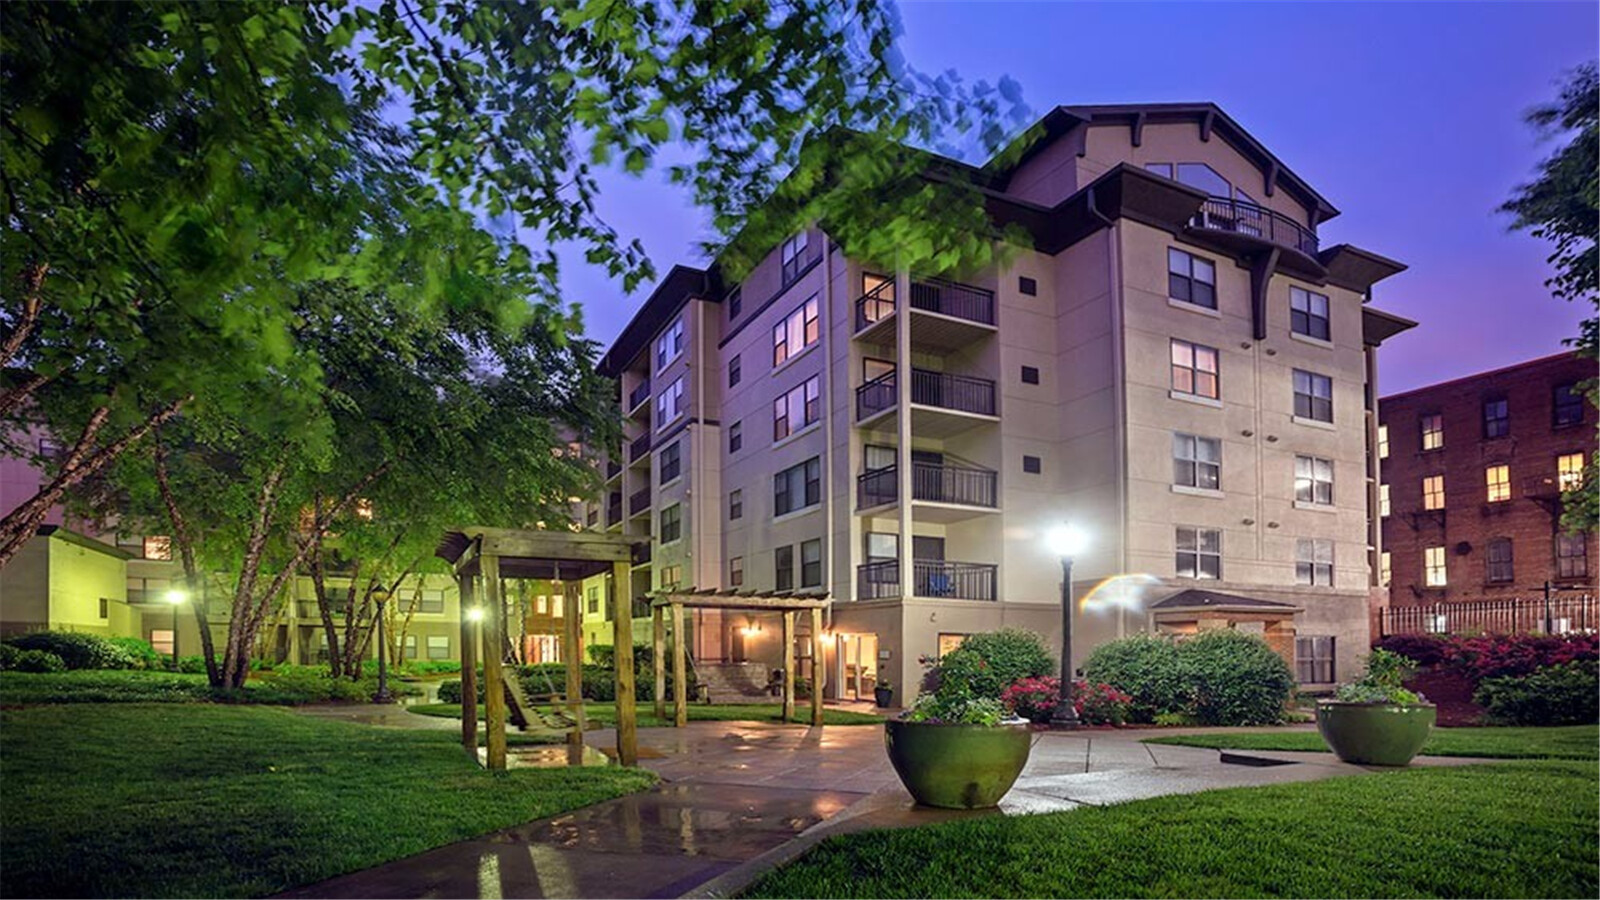 City Plaza - 133 Trinity Ave SW, Atlanta, GA Apartments for Rent